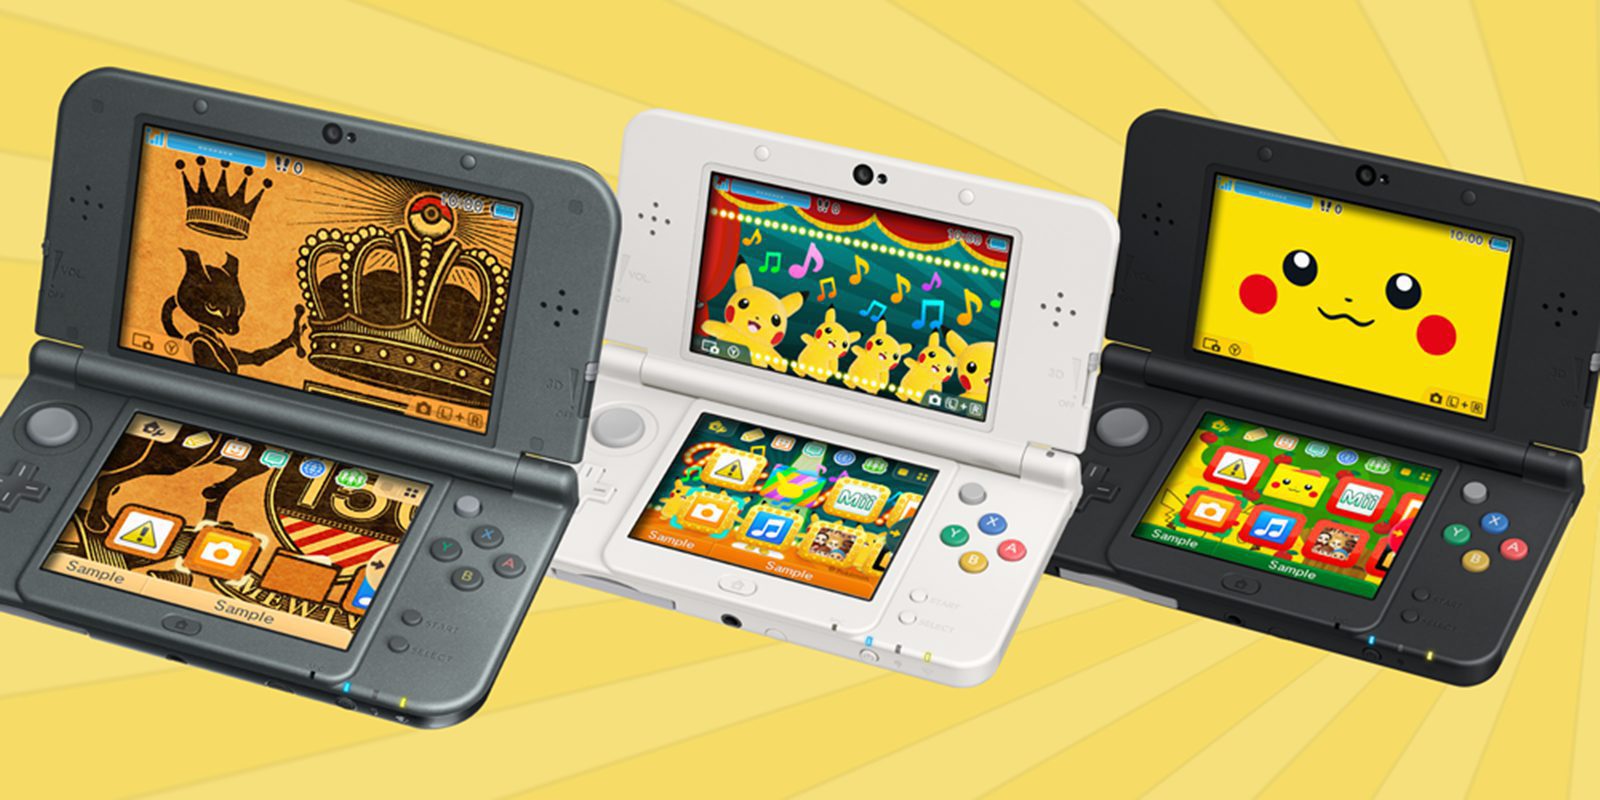 Oleada de nuevos temas para Nintendo 3DS a partir del 7 de julio